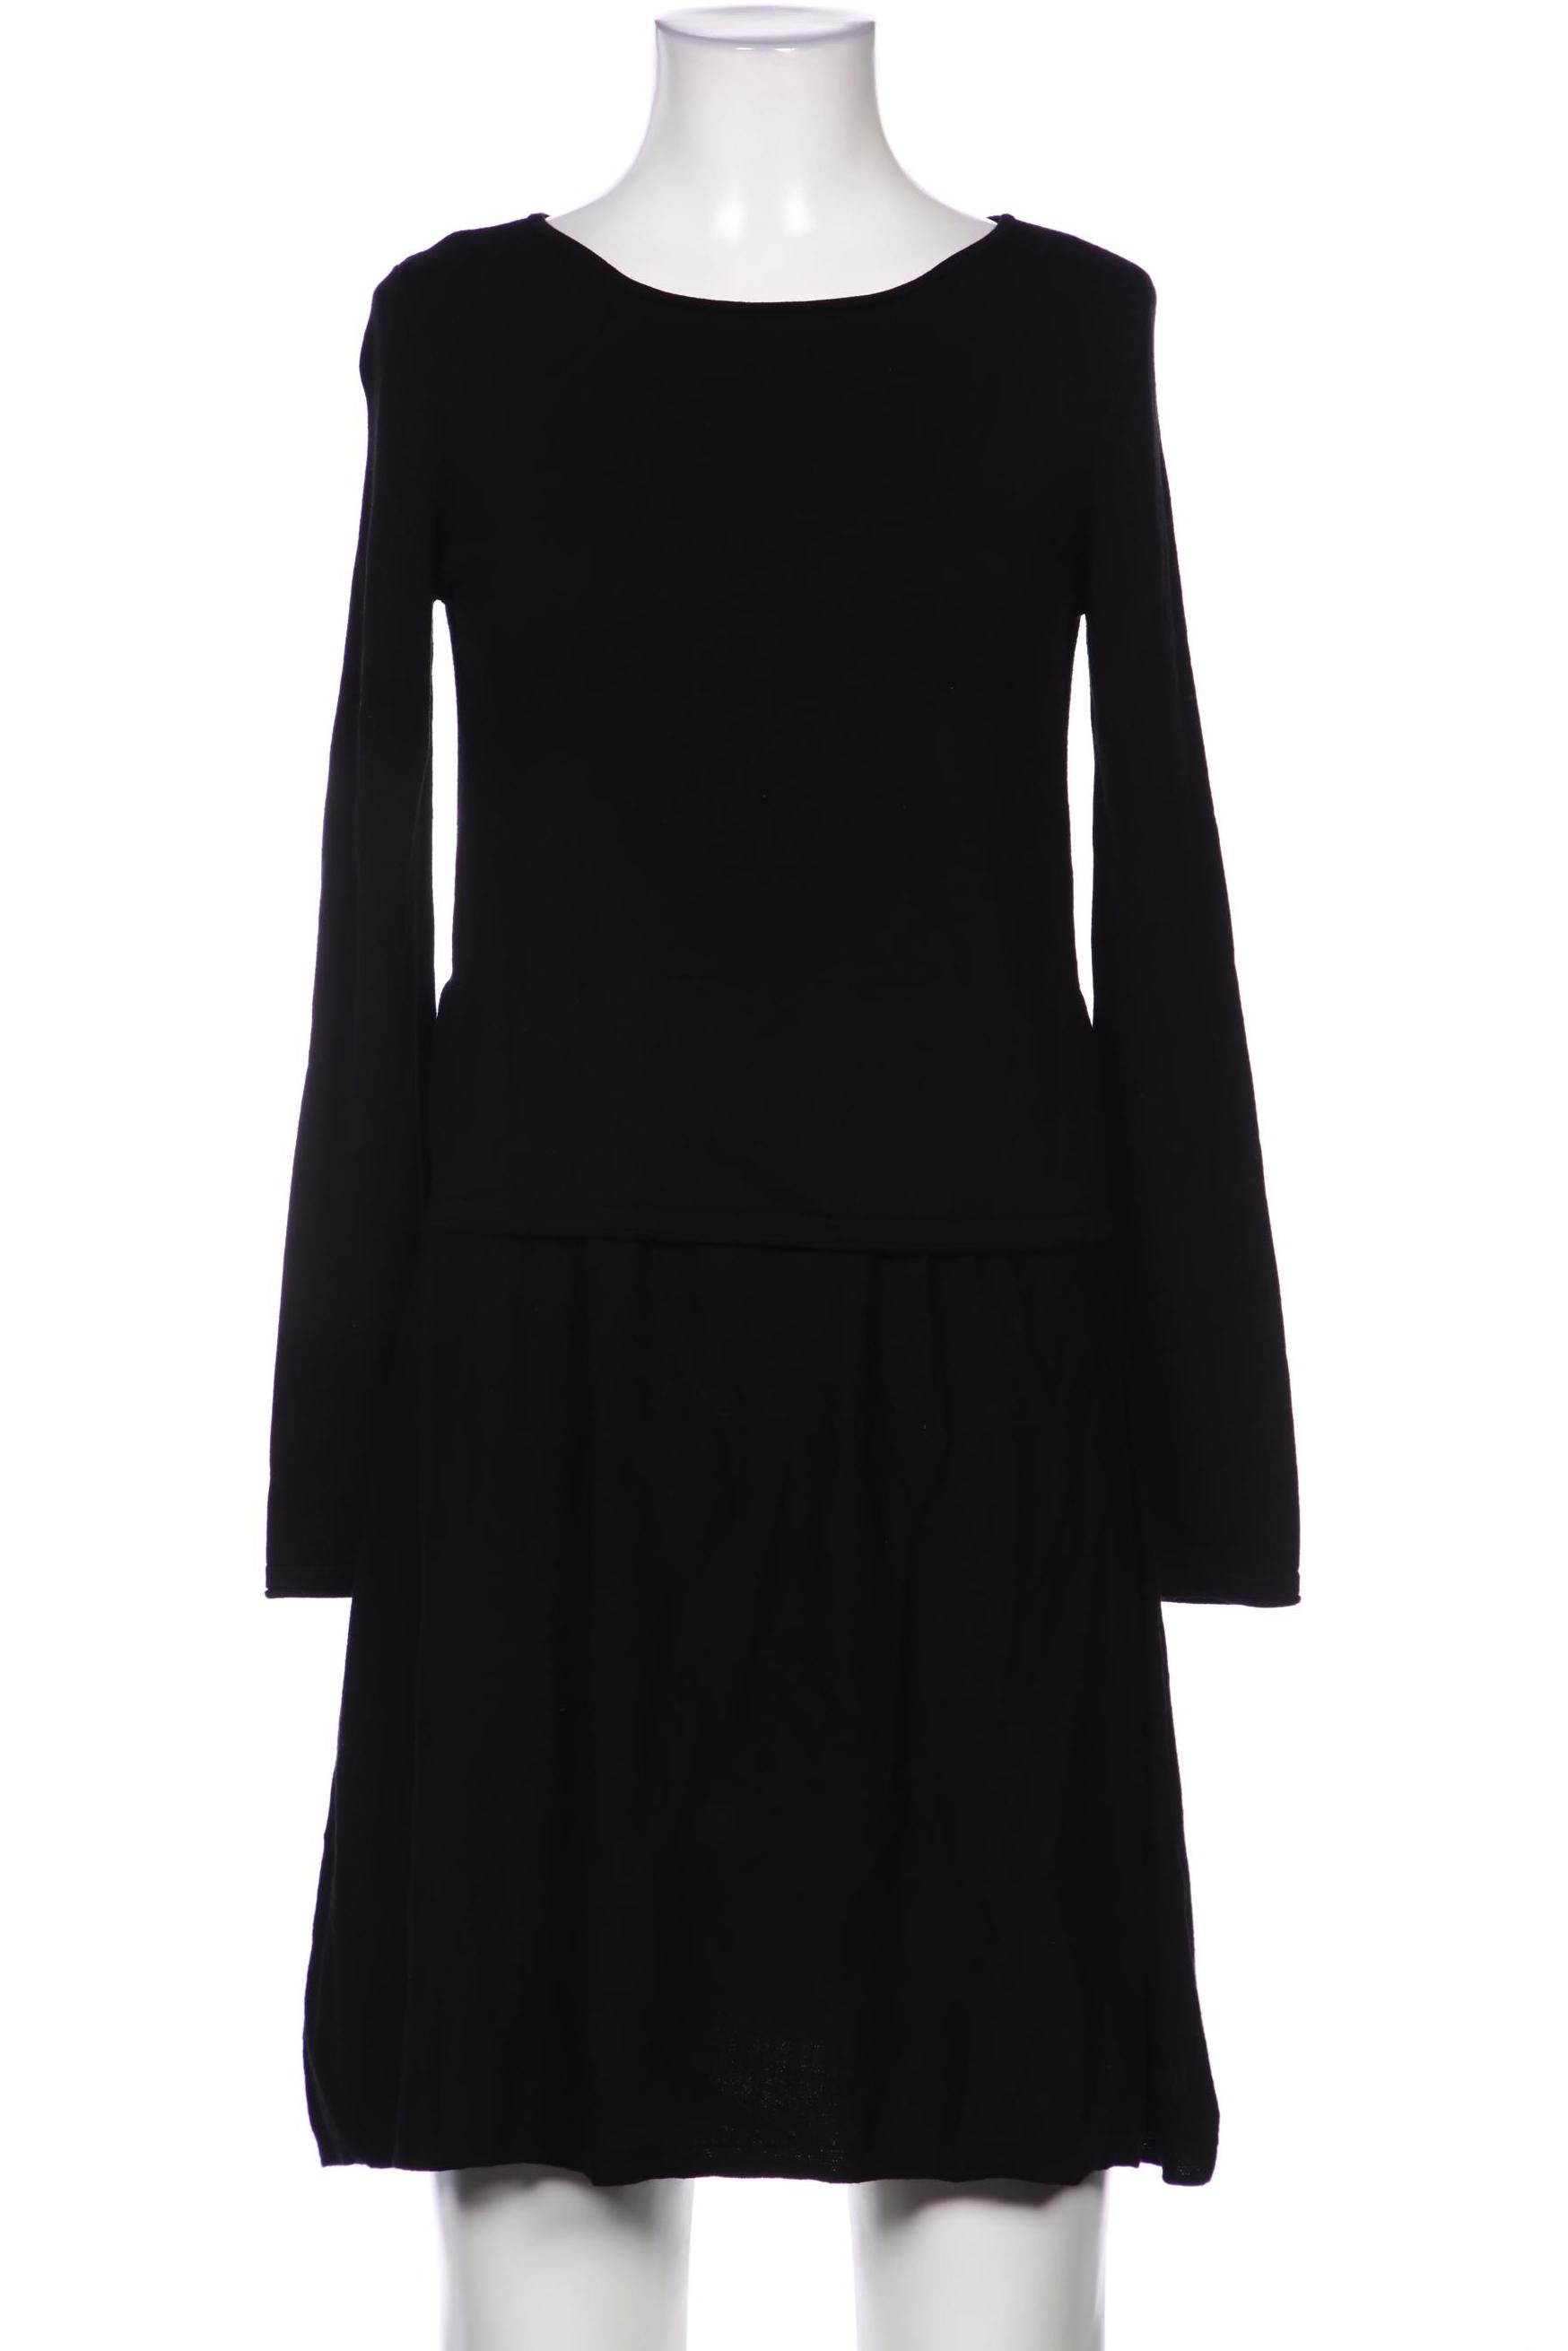 Marc O Polo Damen Kleid, schwarz, Gr. 34 von Marc O Polo